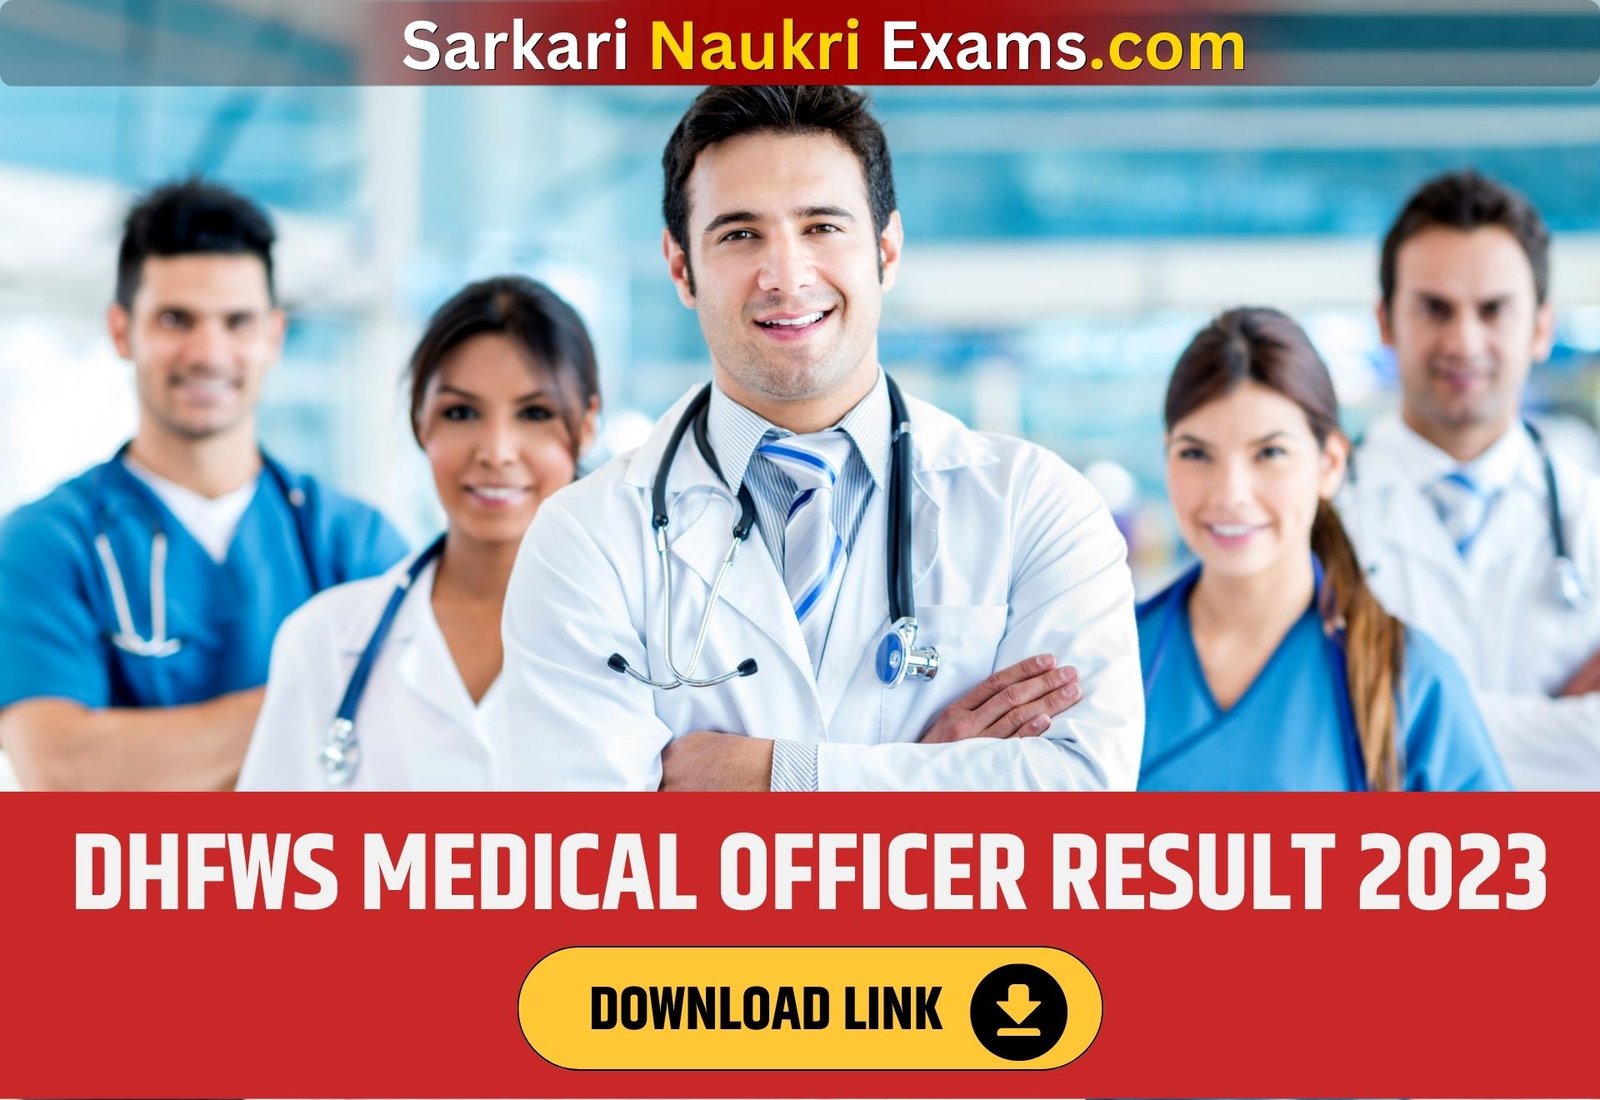 DHFWS Medical Officer Result 2023 | Download Link, Exam Date